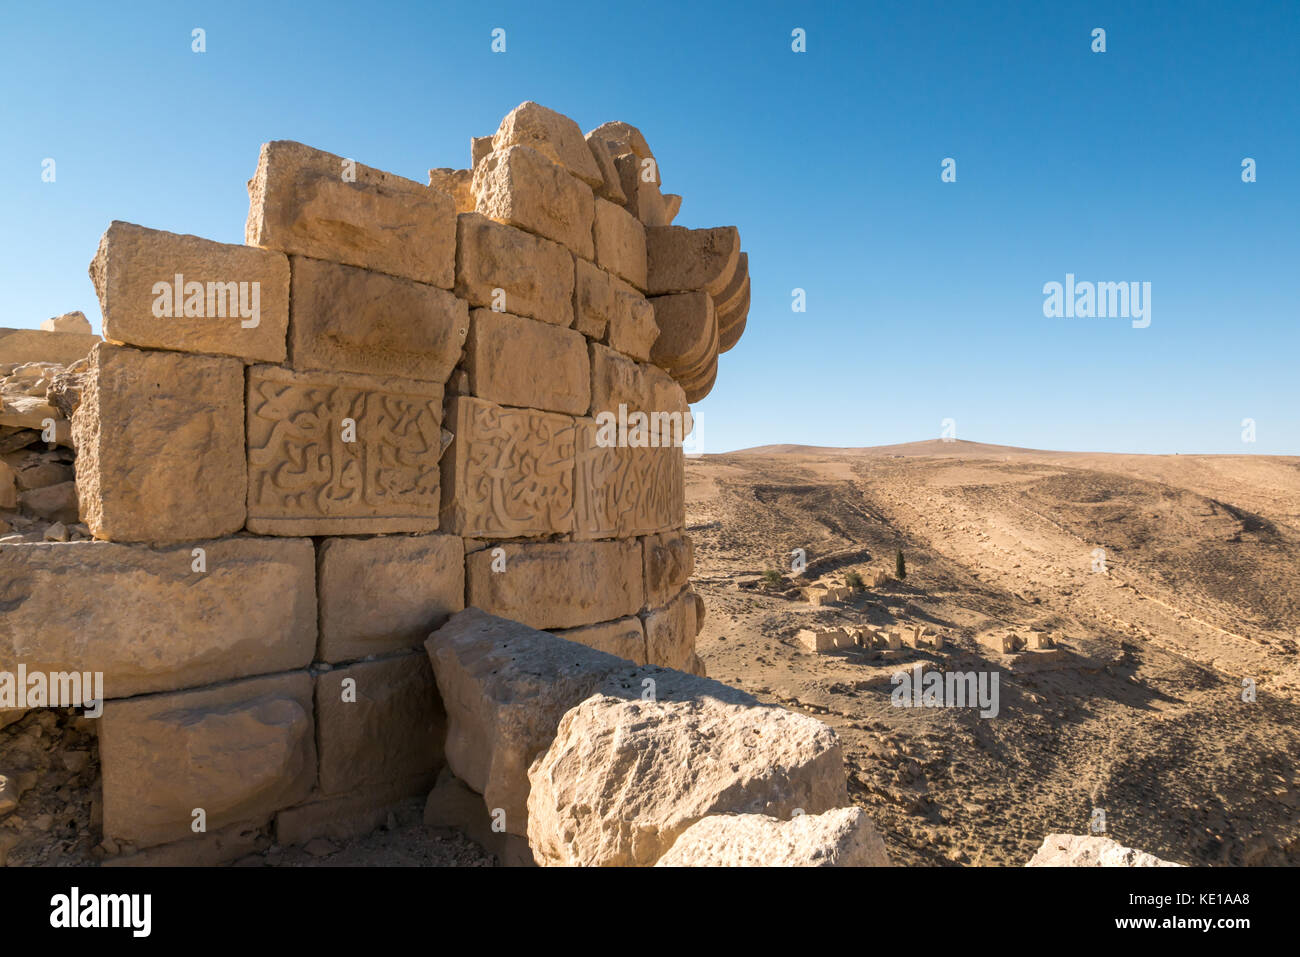 Dettaglio lavori in pietra scolpita iscrizione, Montreal o Shoubak castello del XII secolo crusader fort, Kings Highway, Giordania, Medio Oriente Foto Stock